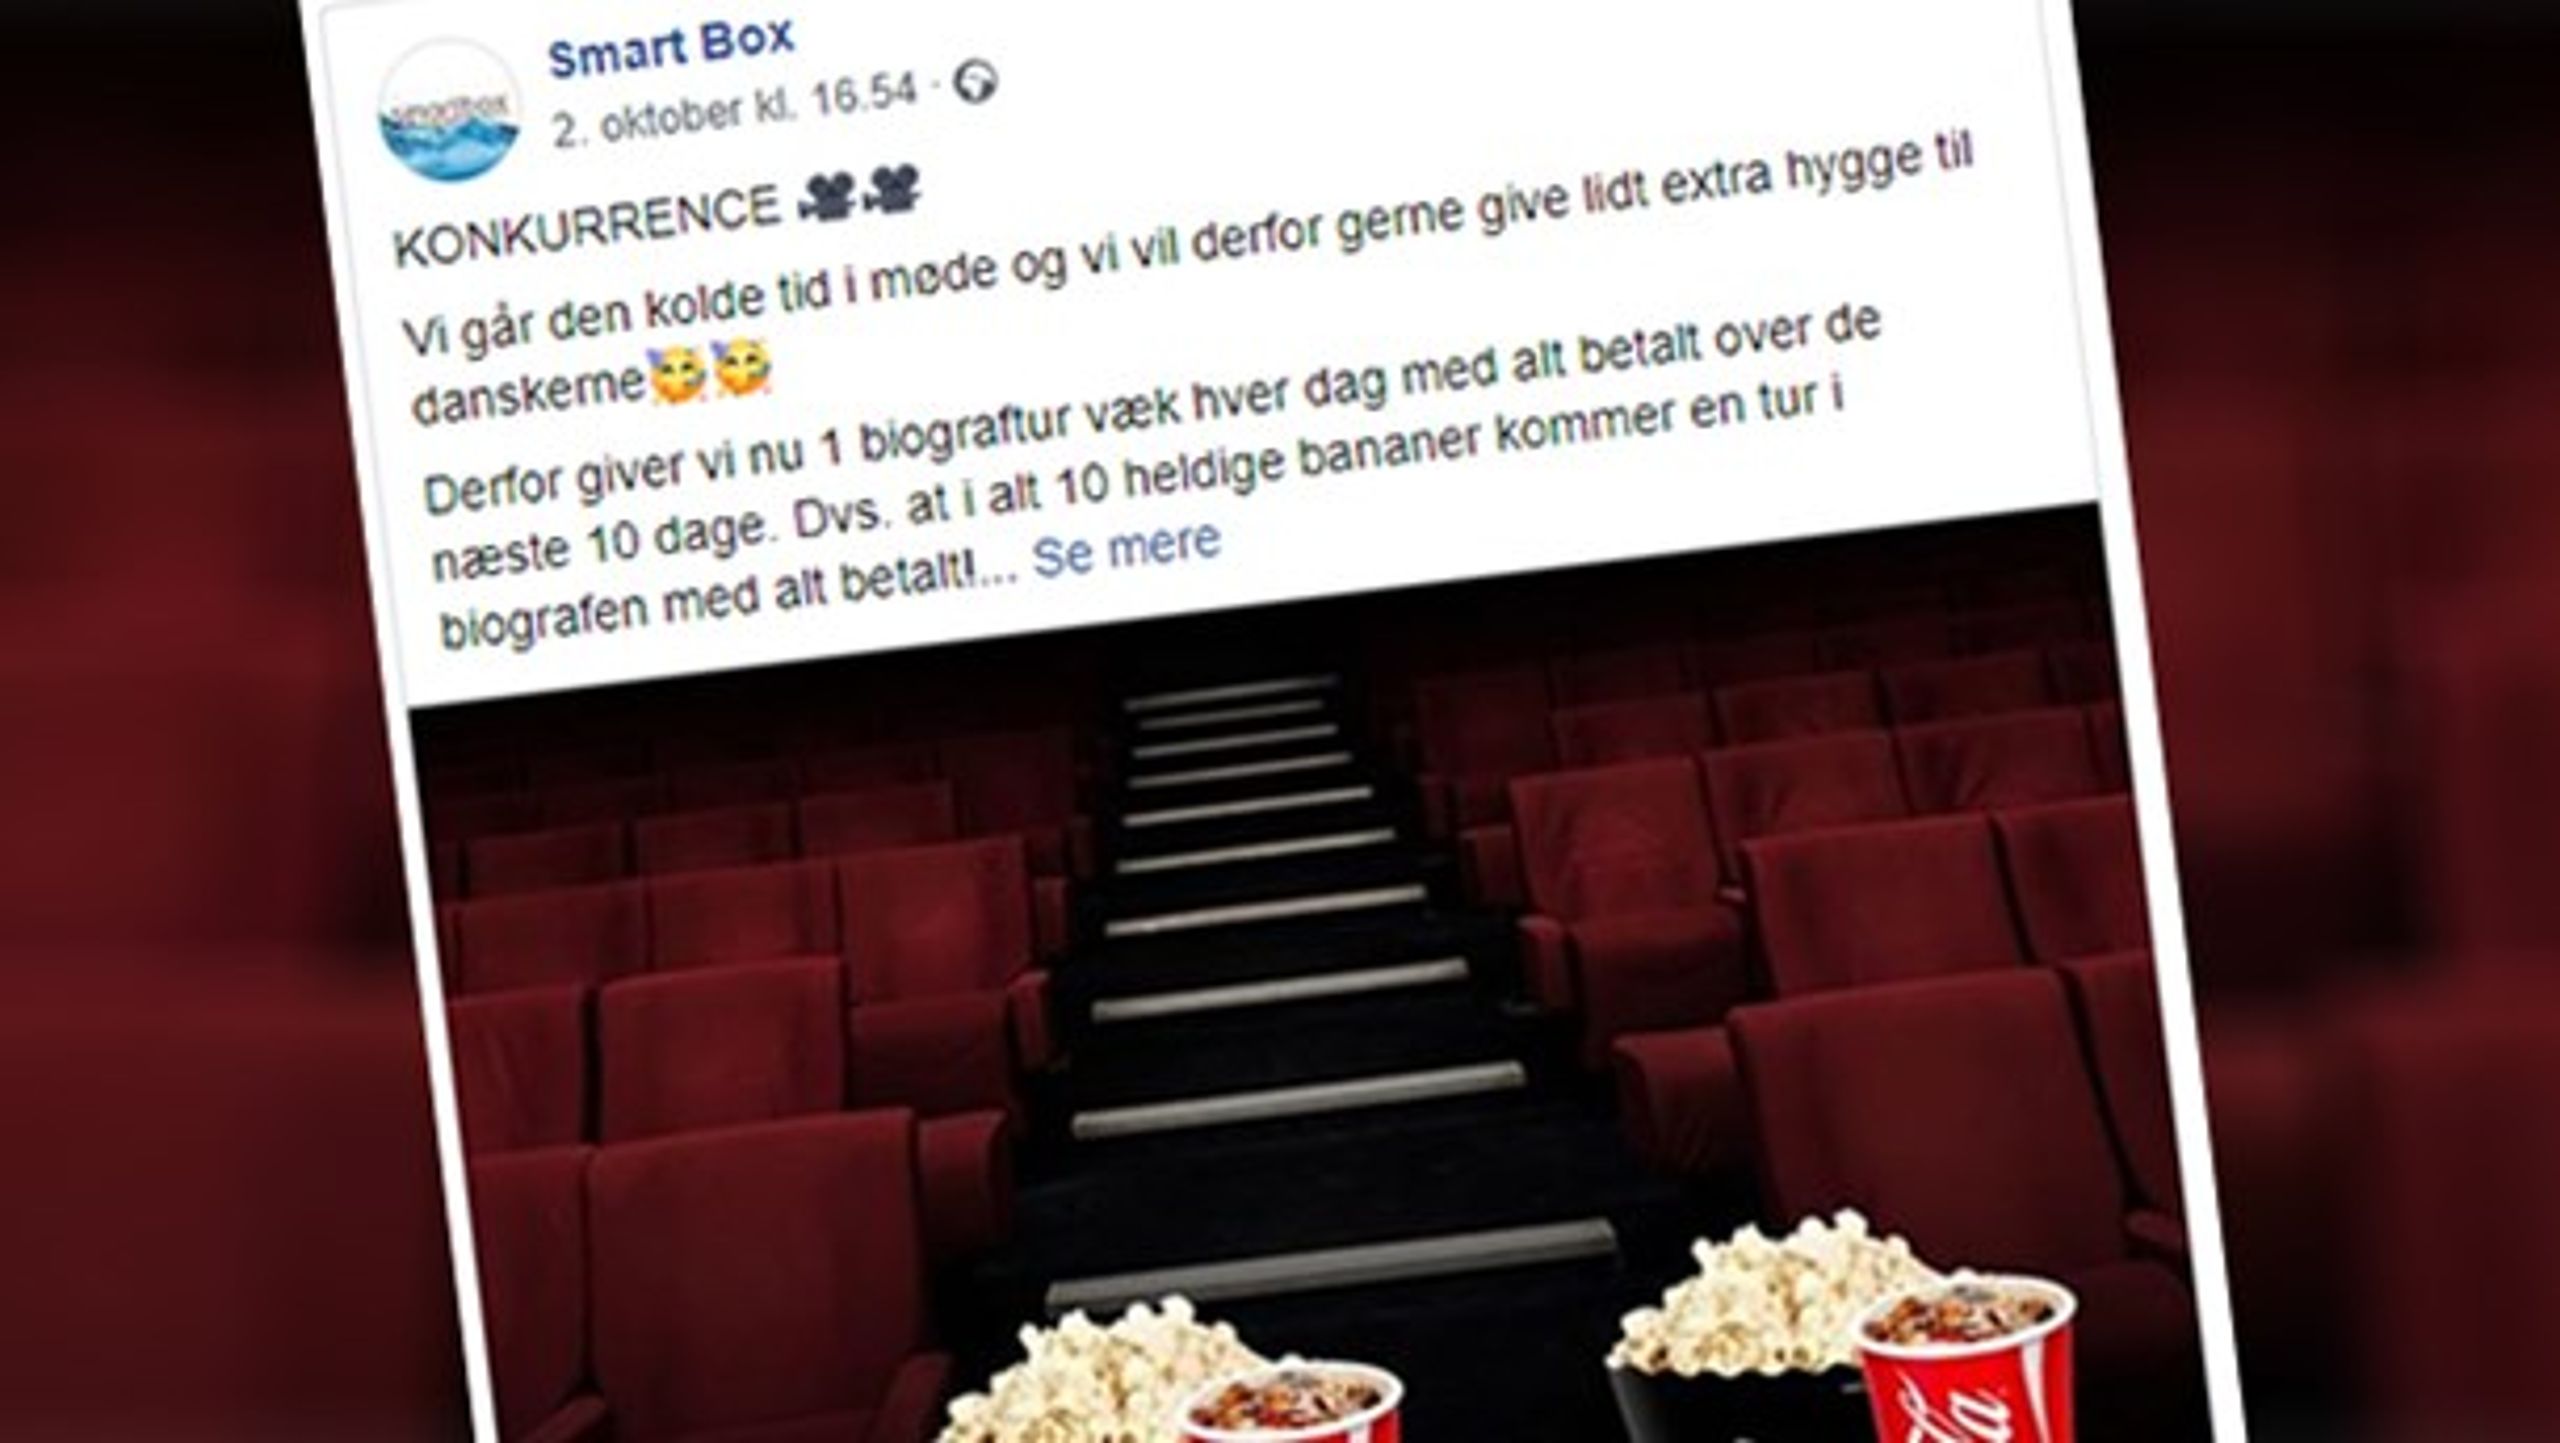 Smartbox misbruges i ny svindelkonkurrence om en tur i biografen med alt betalt.